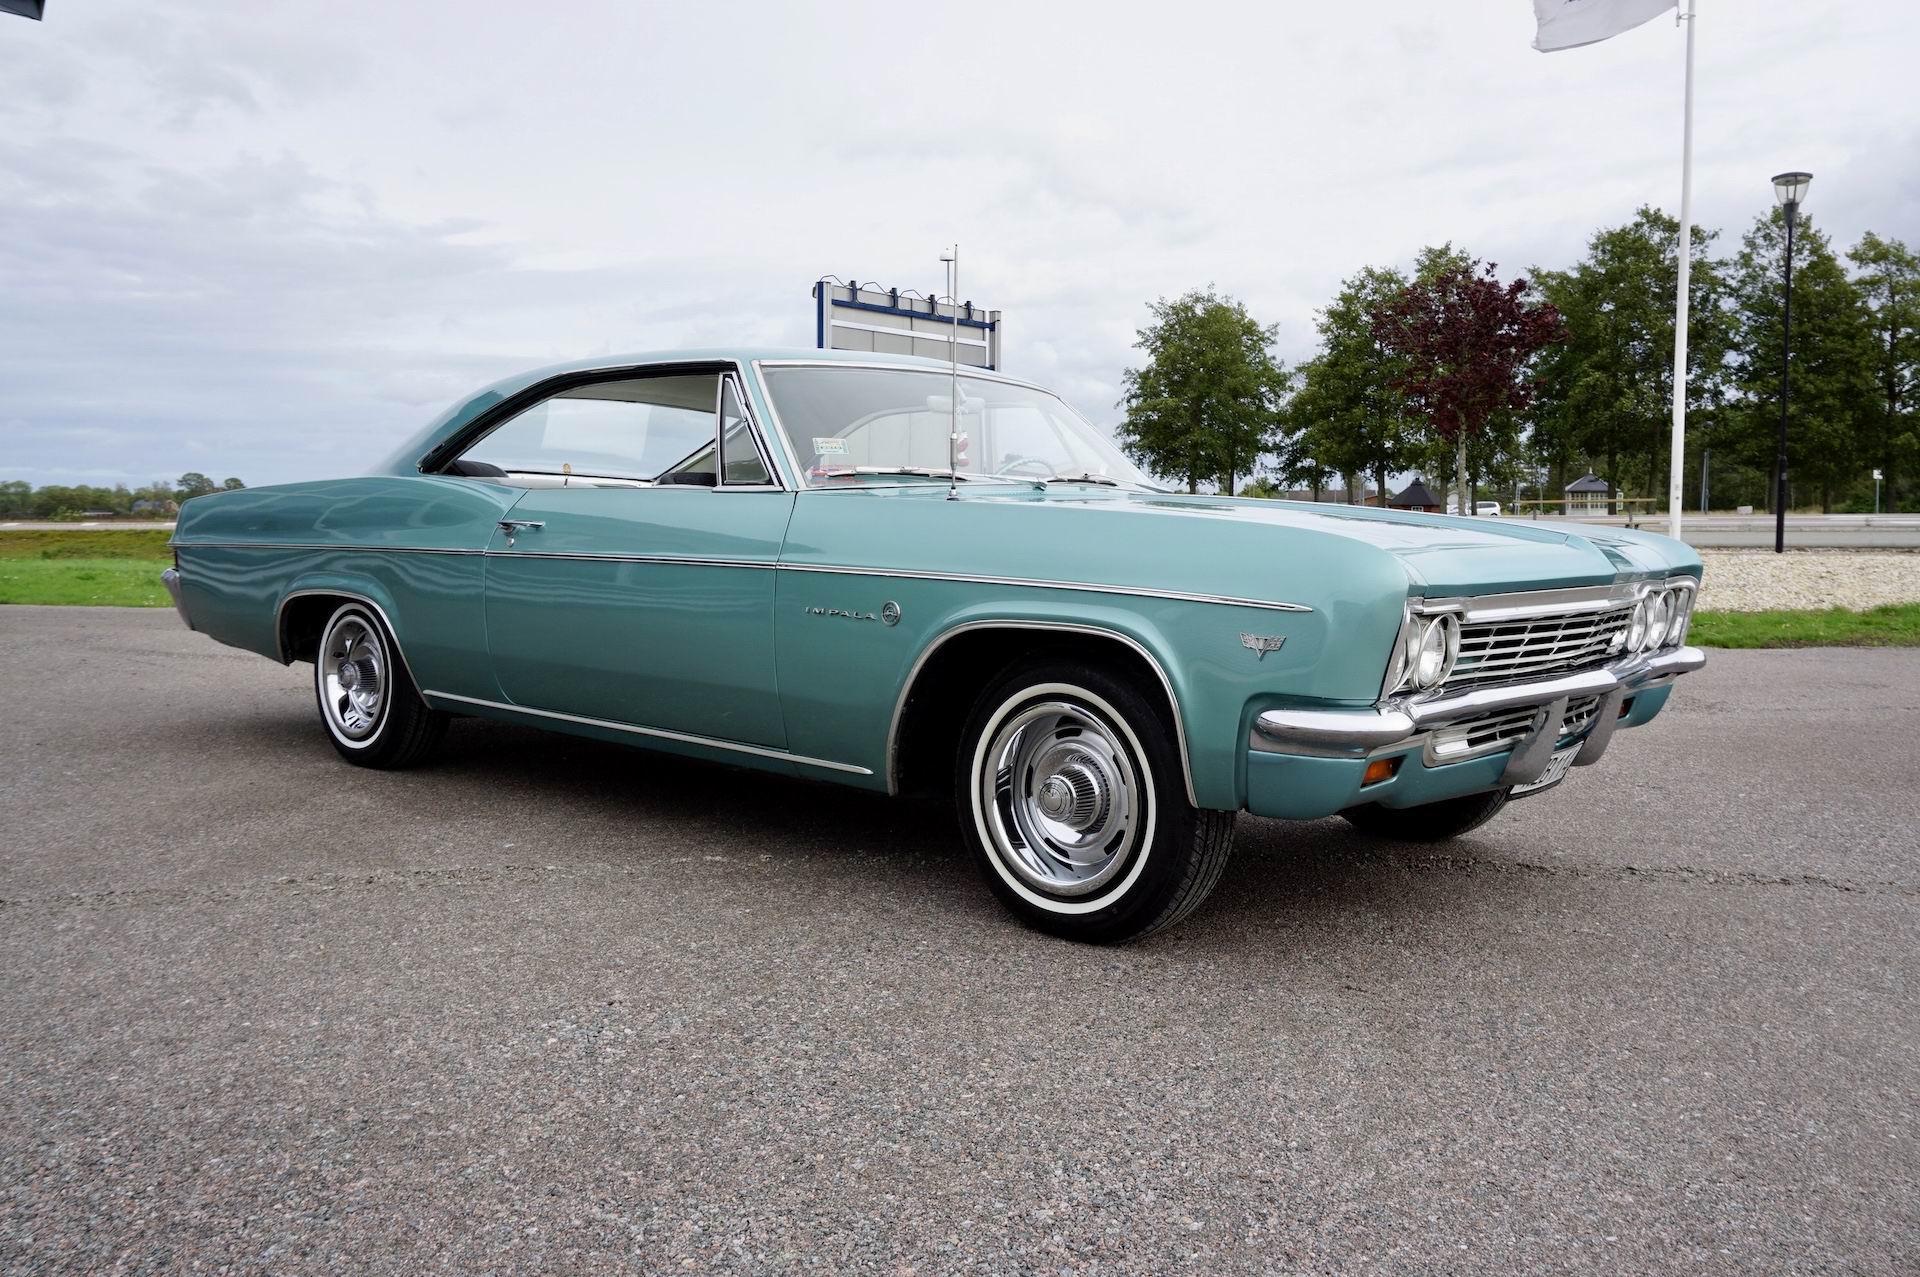 Såld
Chevrolet Impala 2DHT sport coupe från 1966! En fin Impala i bra bruksskick med tuff färgsättning grön metallic och grön/vit inredning!
Nyare V8 motor som är uppgraderad med heifördelare, heders samt edelbrockförgasare och automat som går fint.